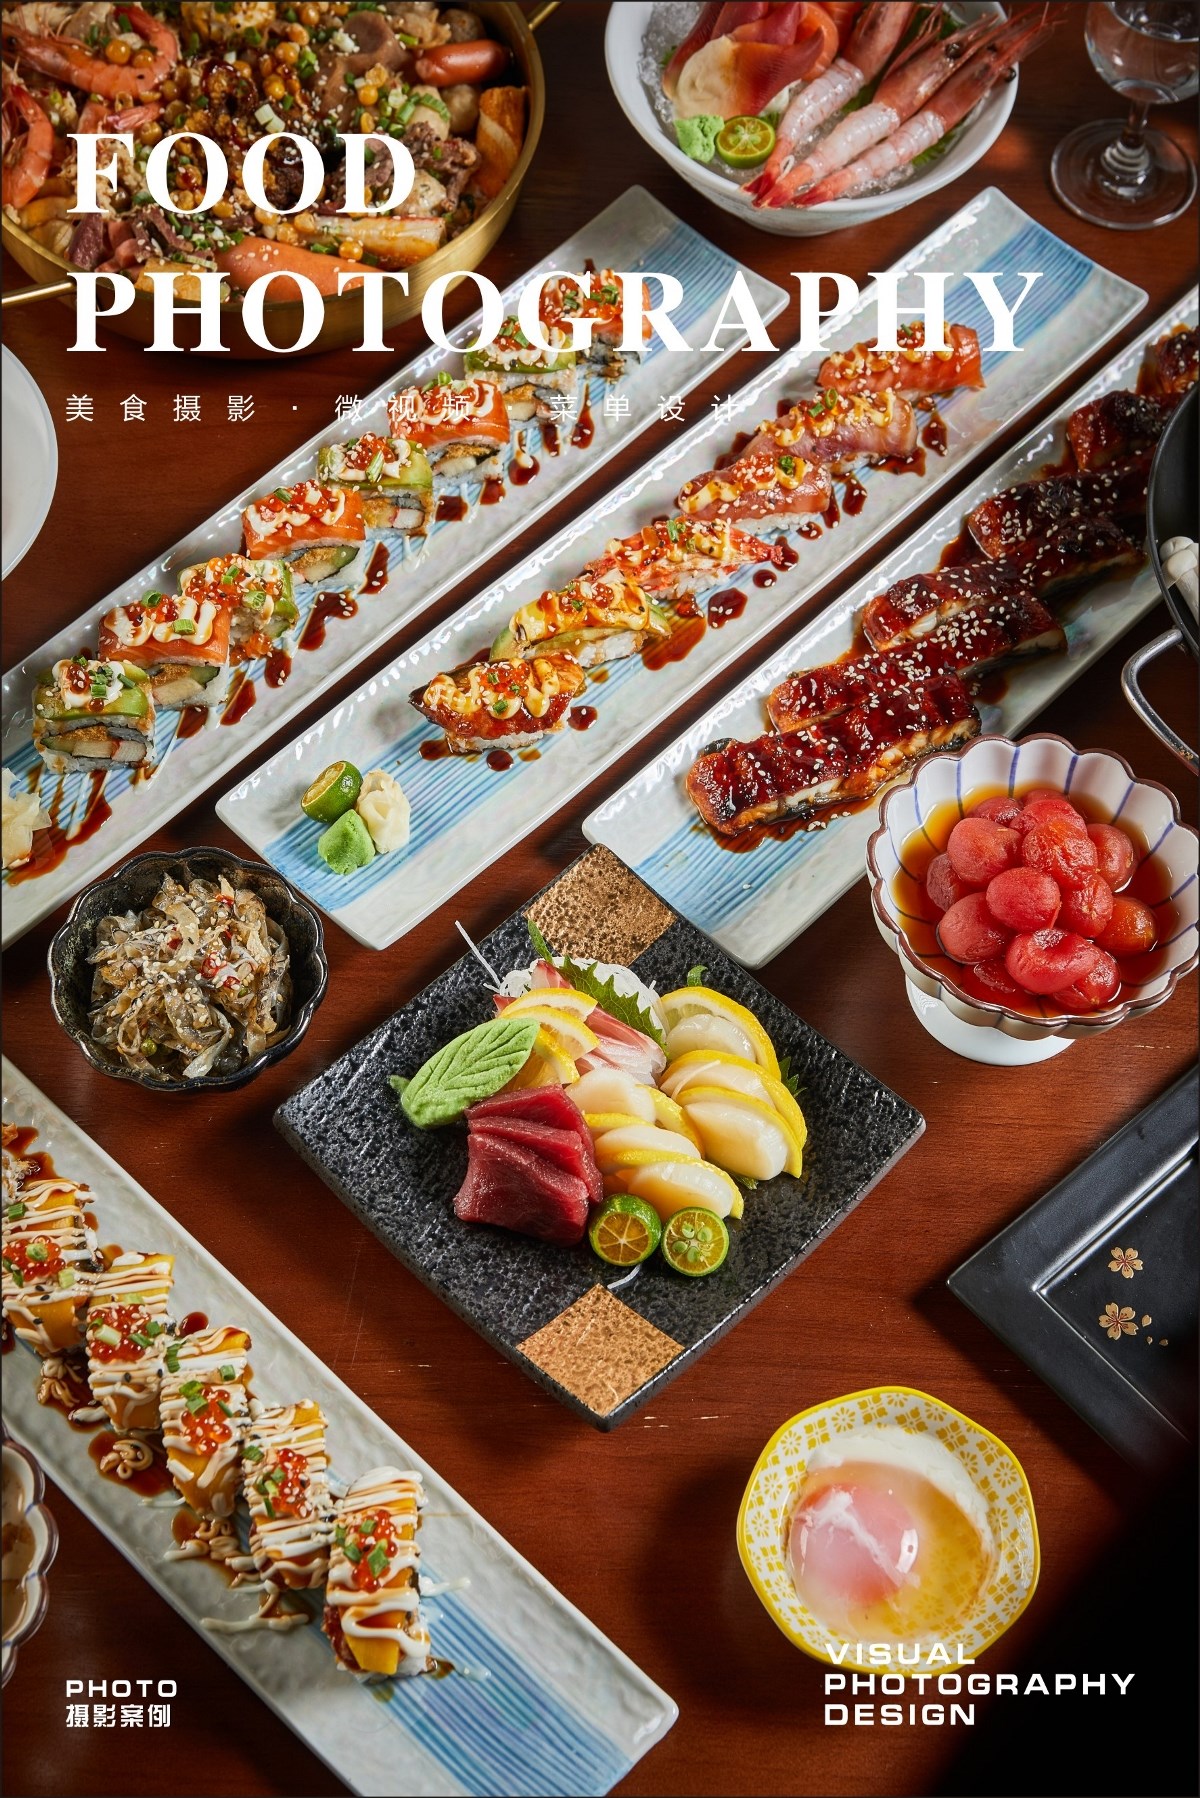 武汉美食摄影|美团首图拍摄|菜单设计|中餐摄影